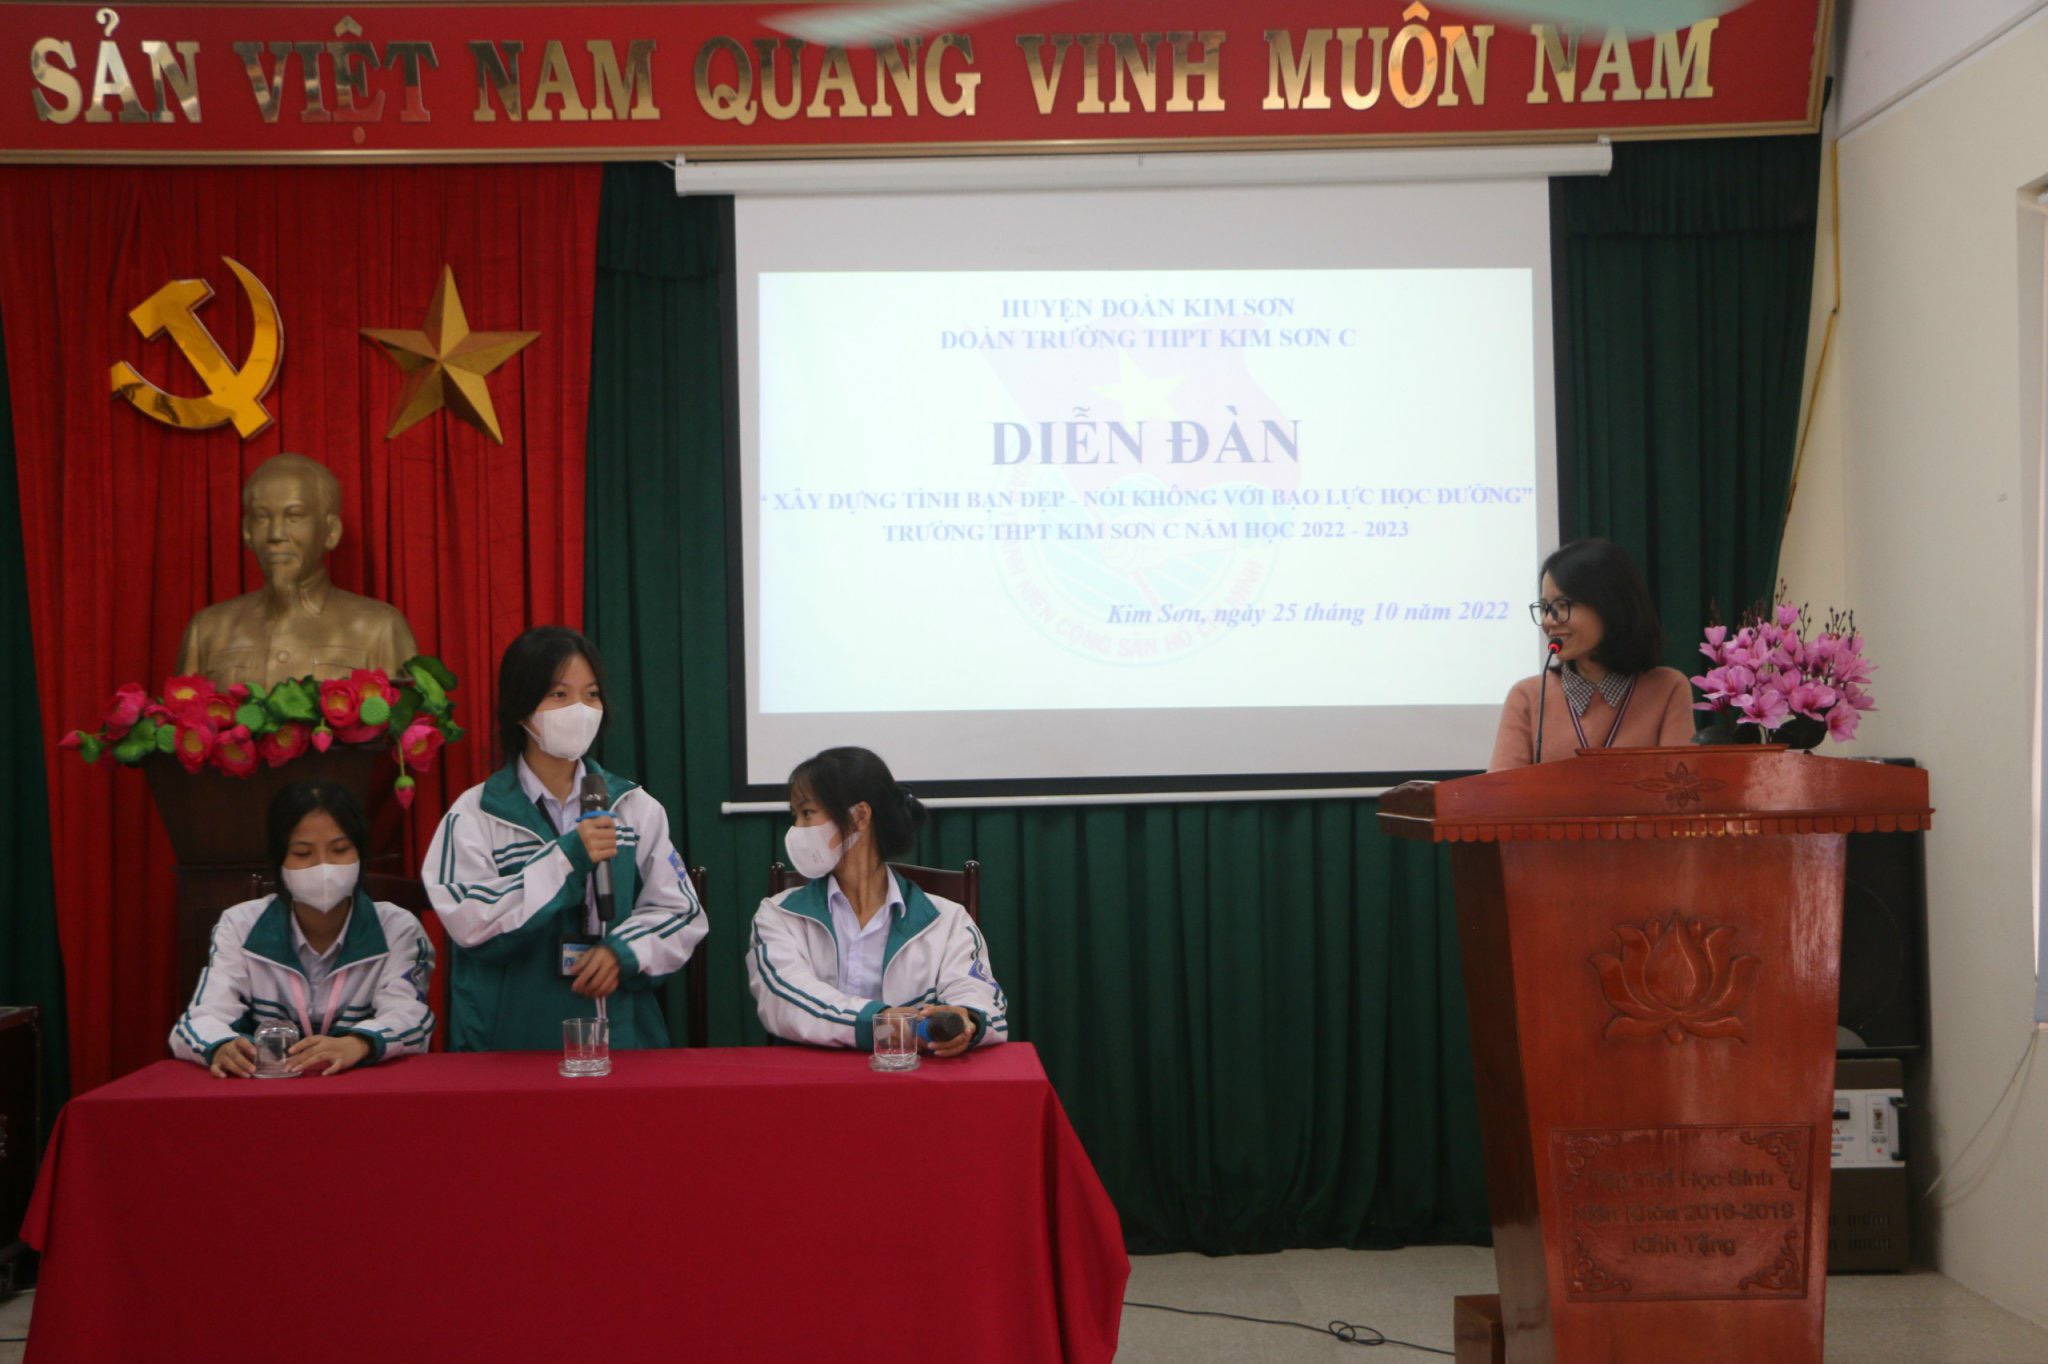 Đoàn trường THPT Kim Sơn C, huyện Kim Sơn tổ chức Diễn đàn “Xây dựng tình bạn đẹp - nói không với bạo lực học đường”